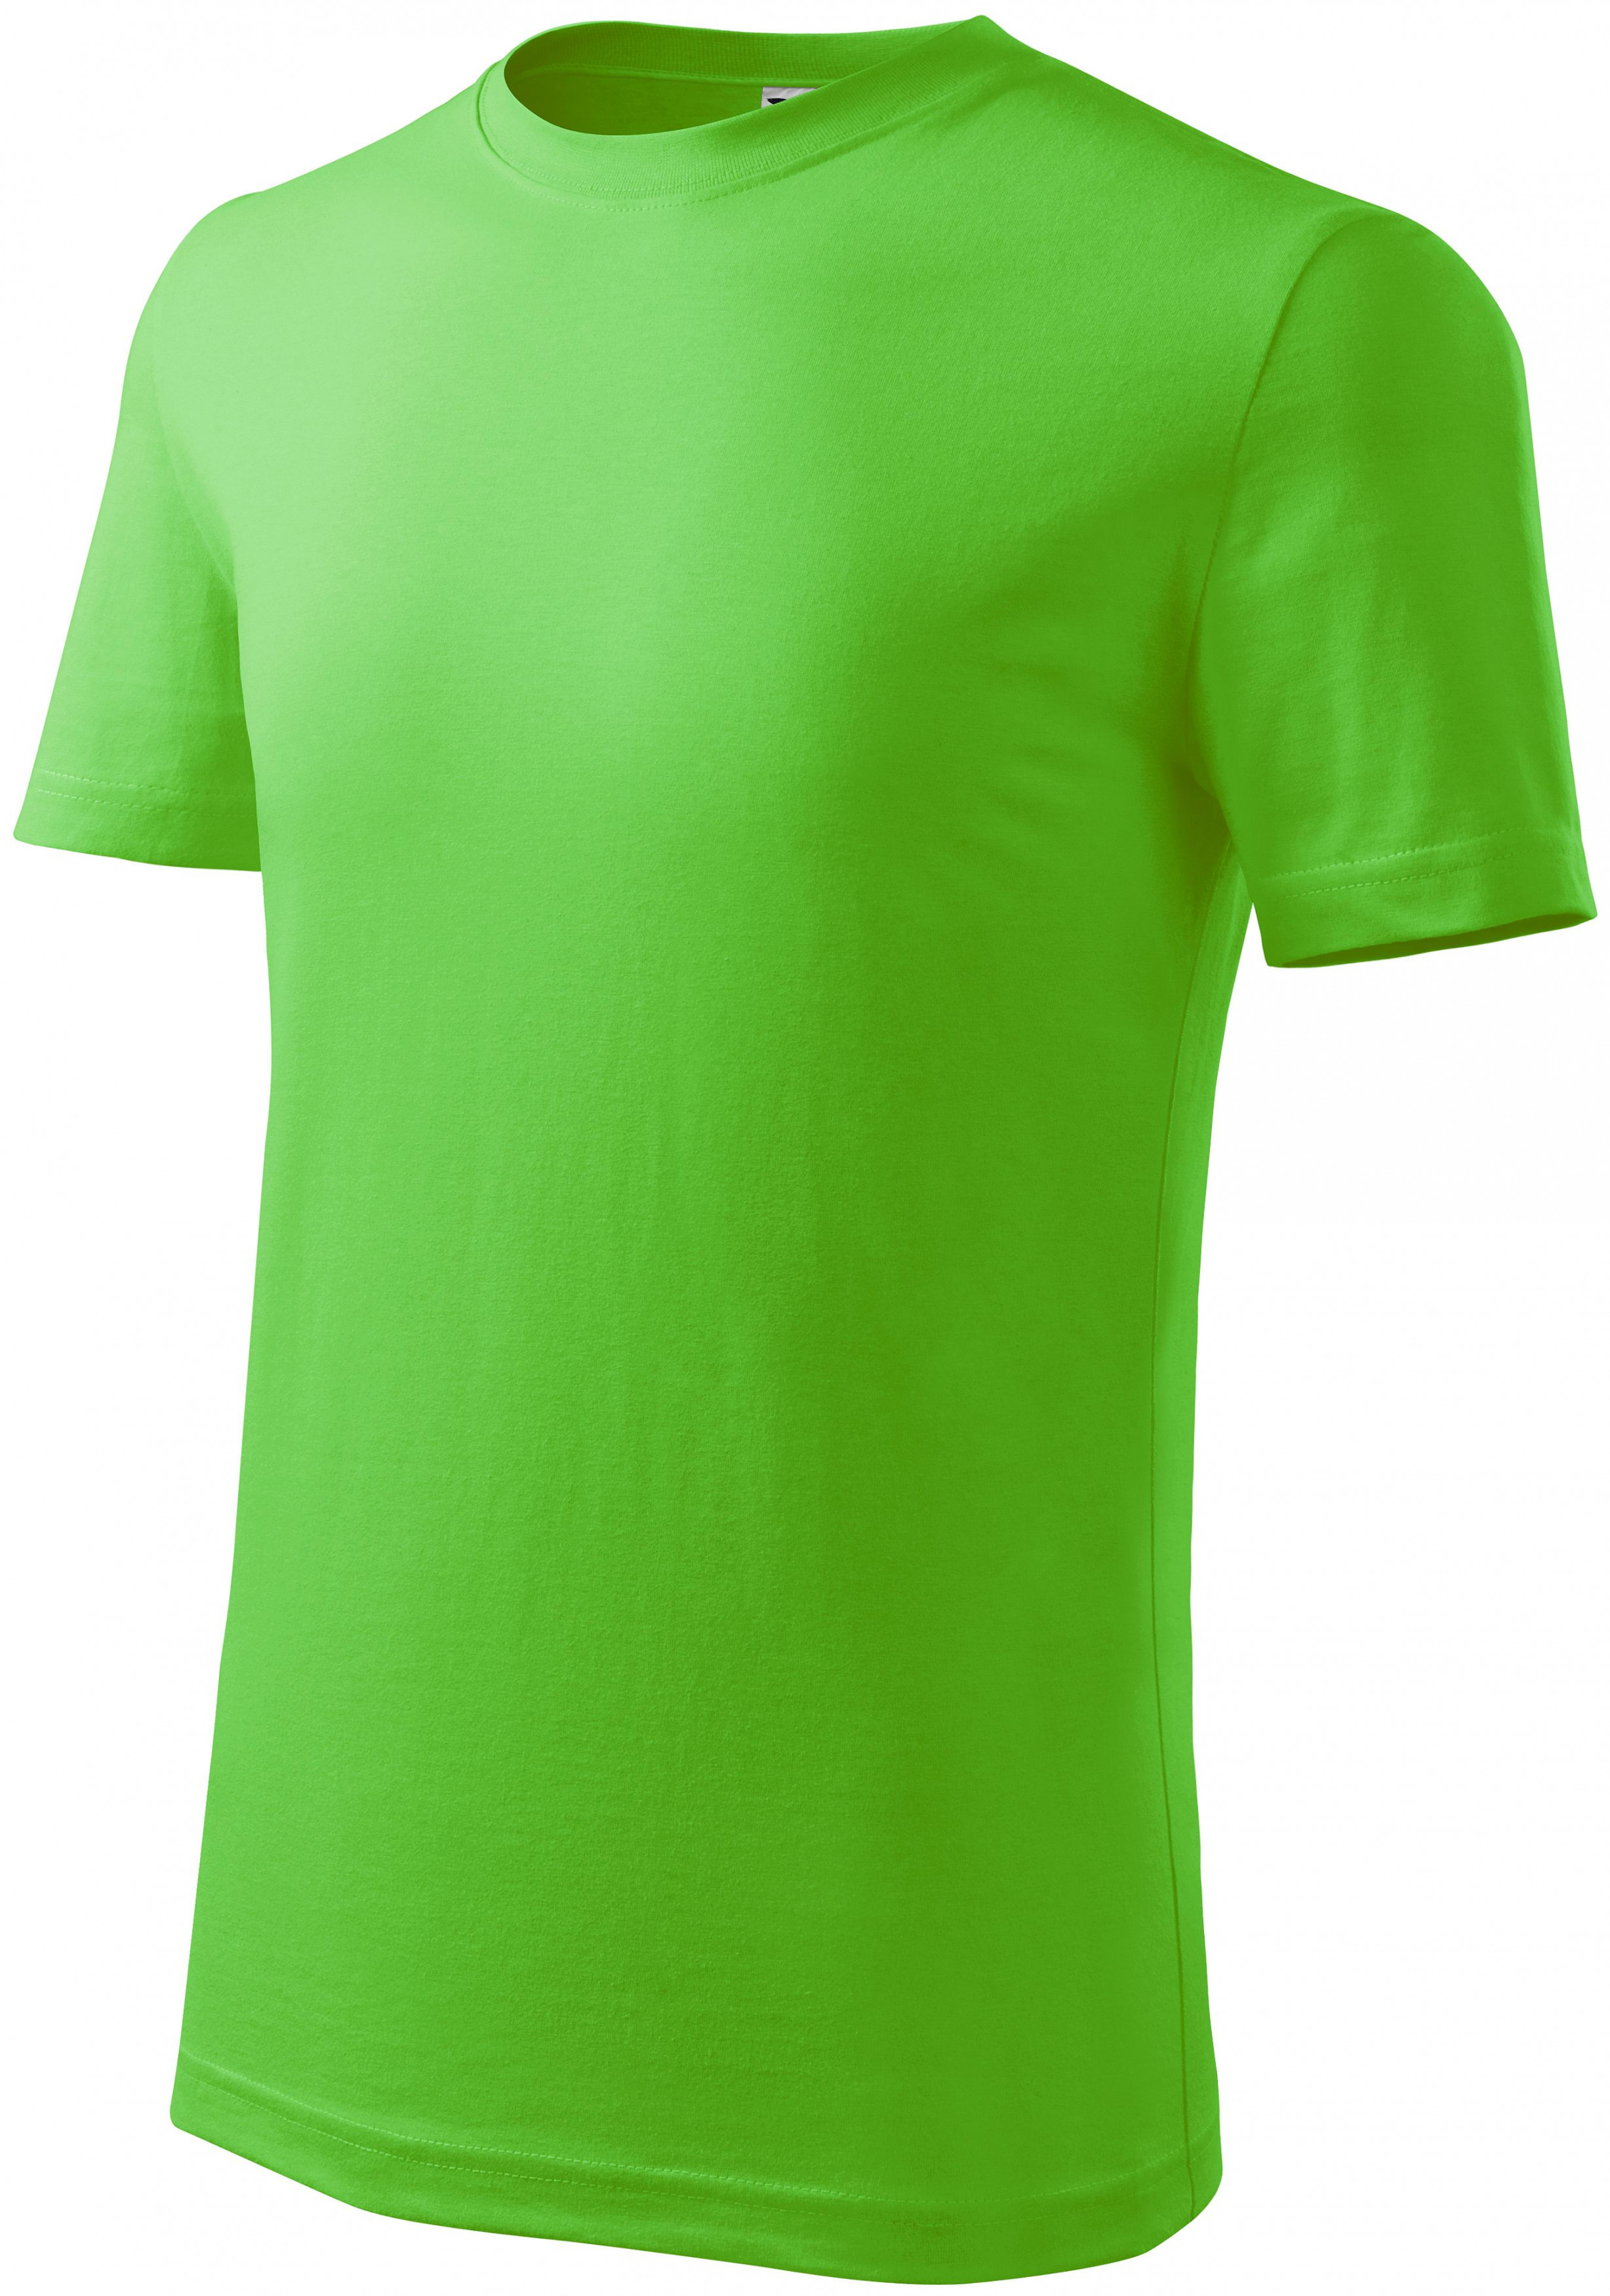 Detské tričko ľahšie, jablkovo zelená, 146cm / 10rokov